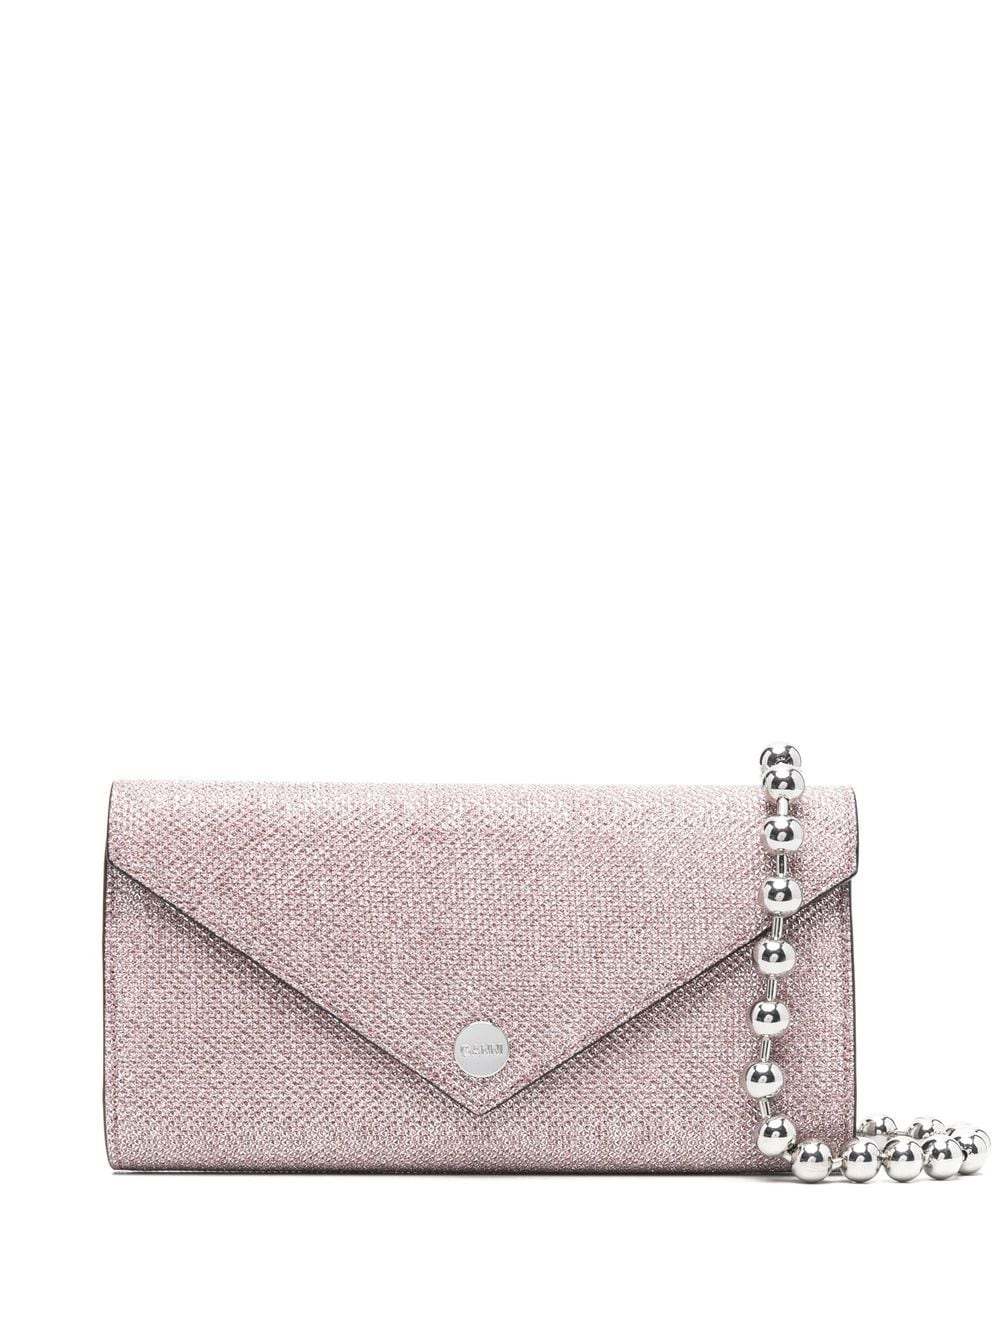 GANNI metallic-effect tote bag - Pink